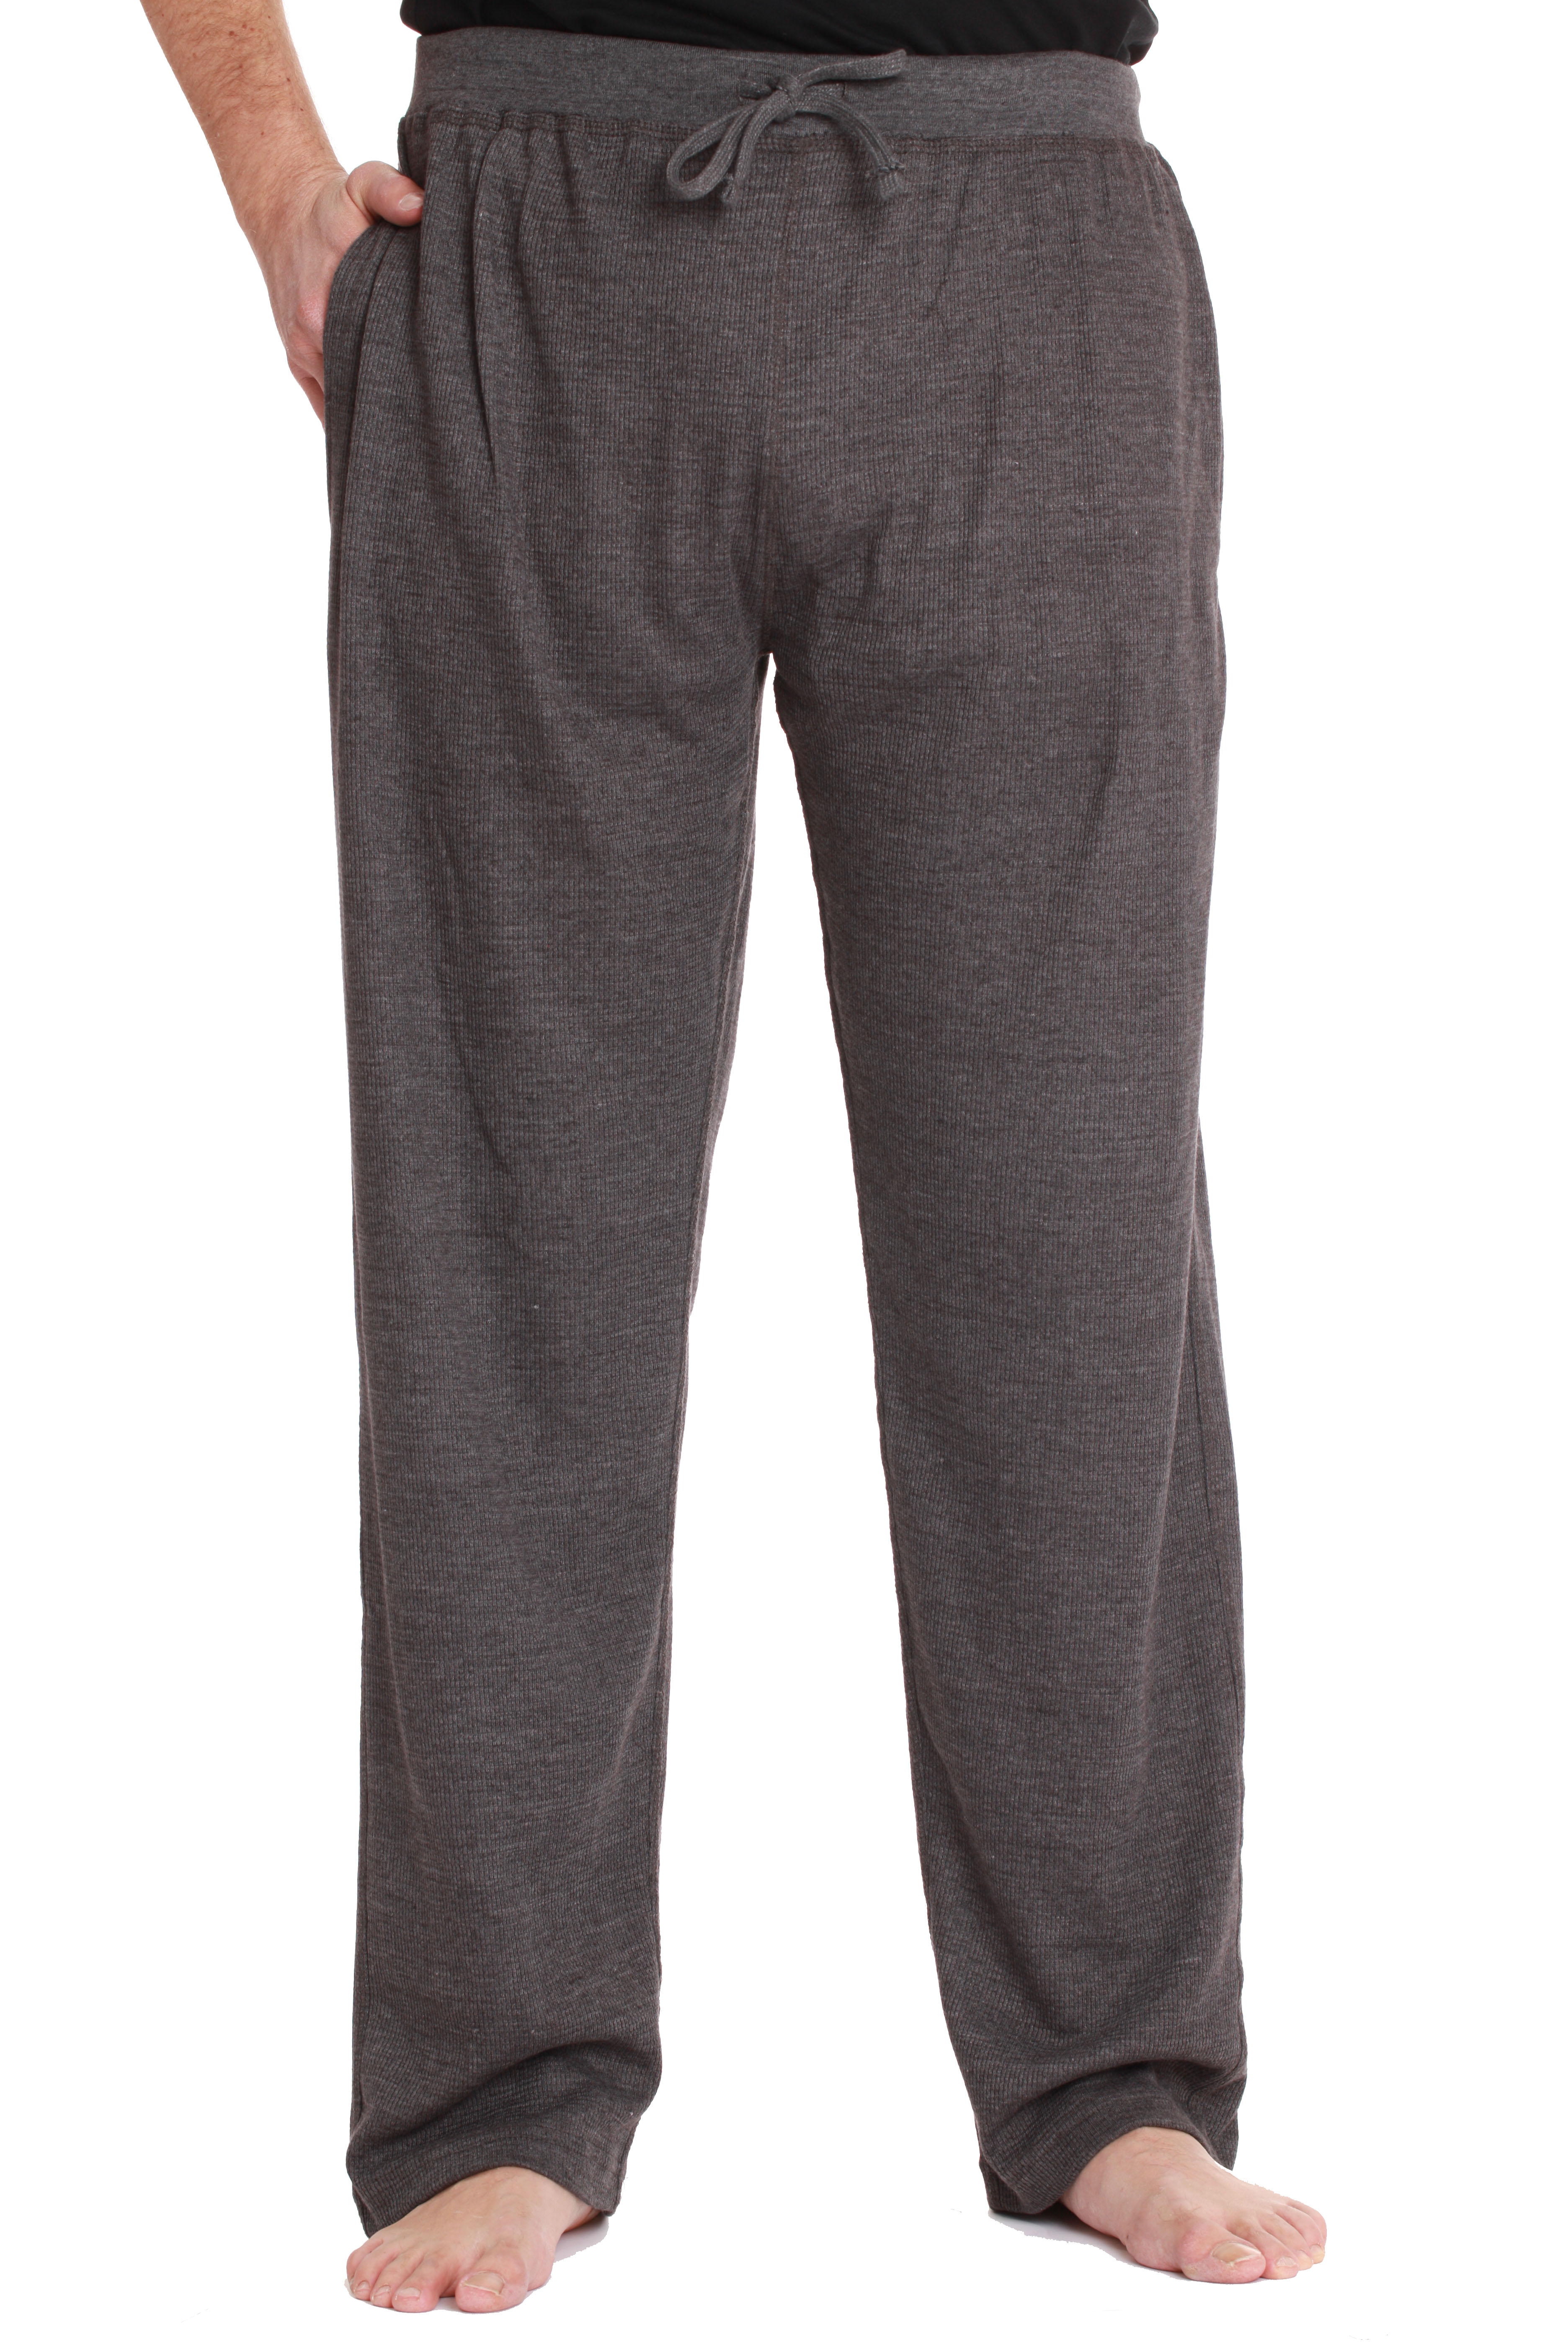 #followme Mens Thermal Pajama Pants with Pockets | eBay